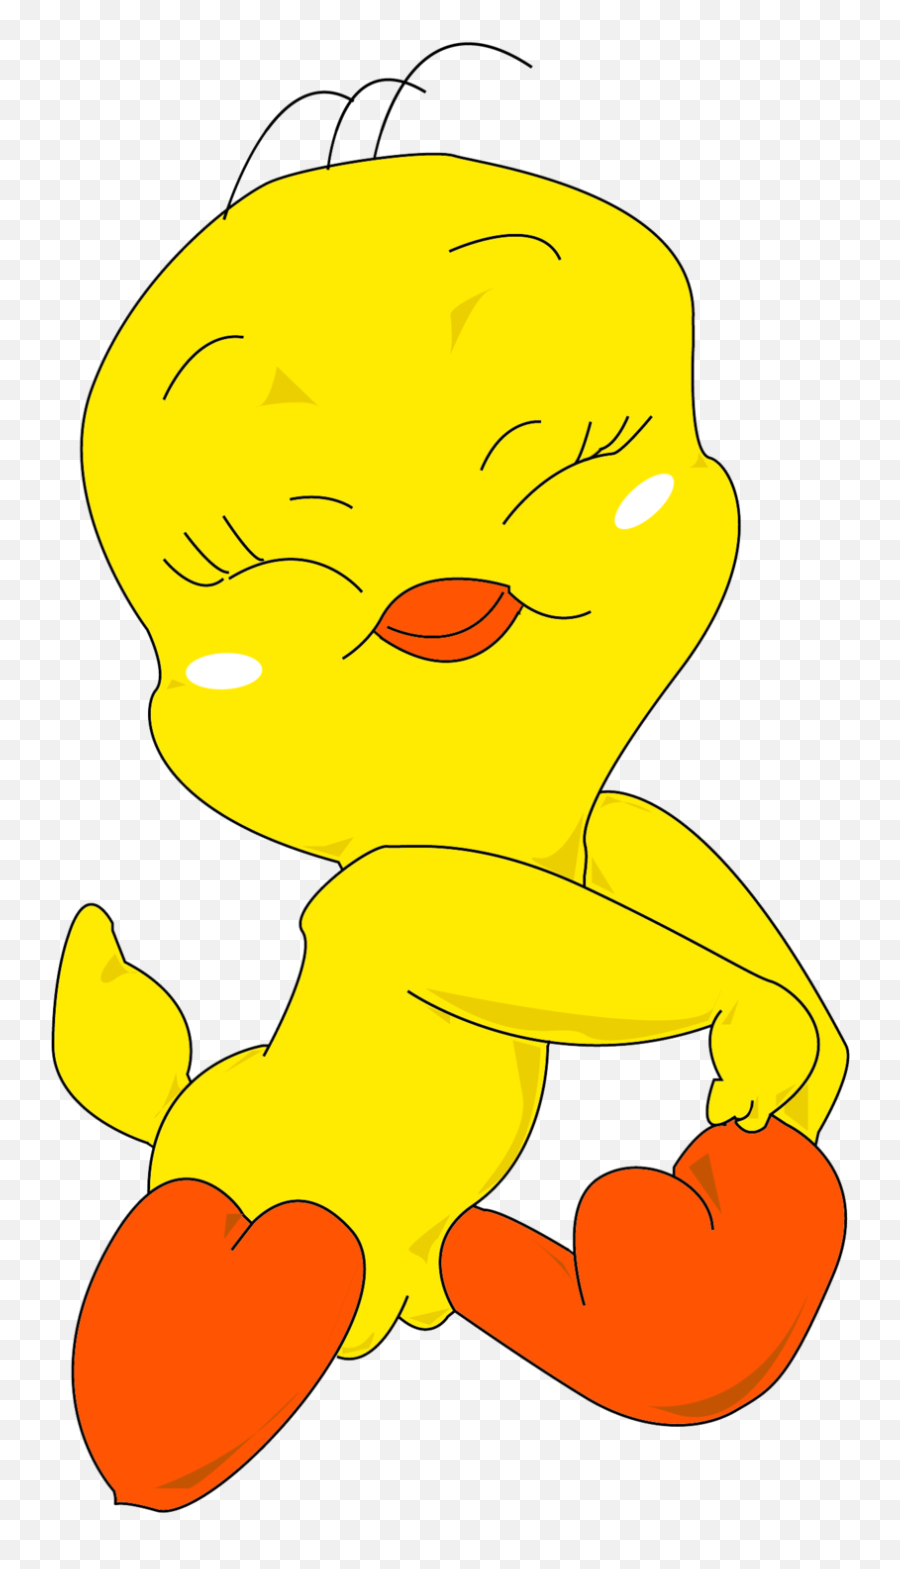 Drawn Cute Cartoon Chicken Free Image Download Emoji,Chicken Cartoon Png